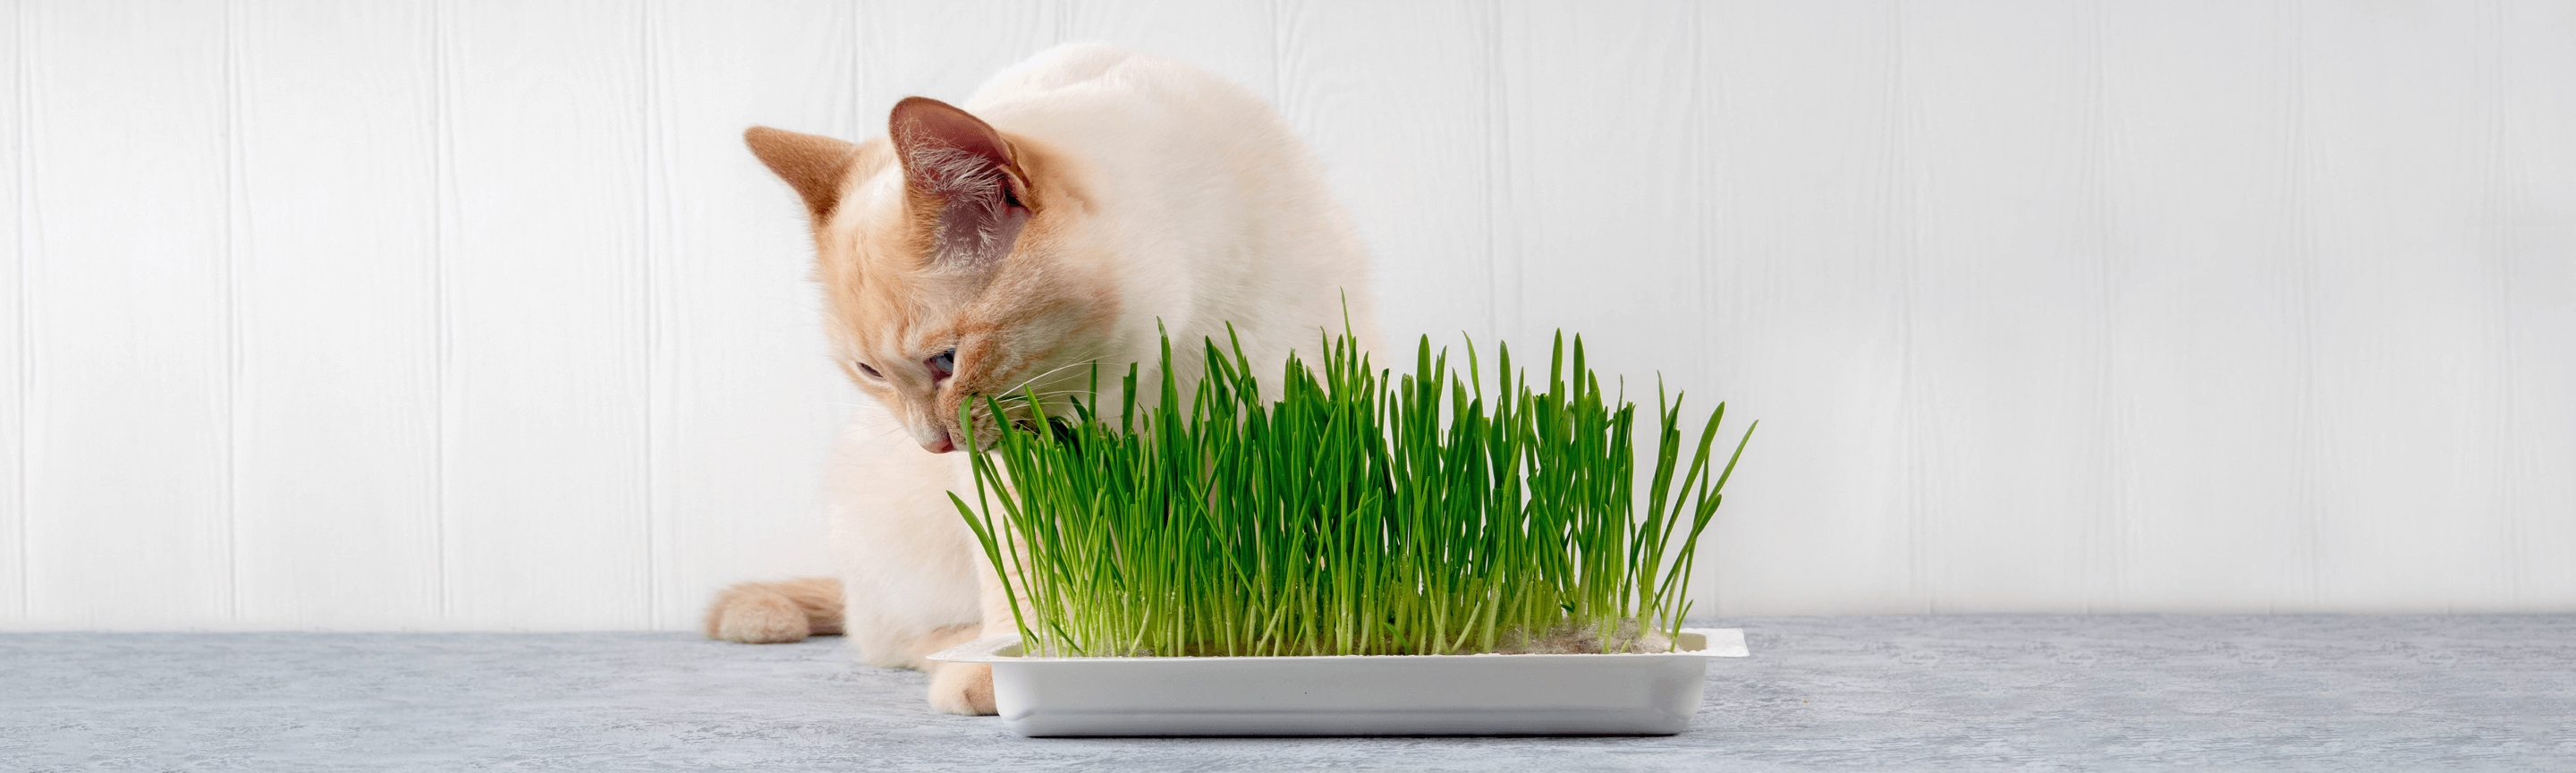 Коти їдять траву